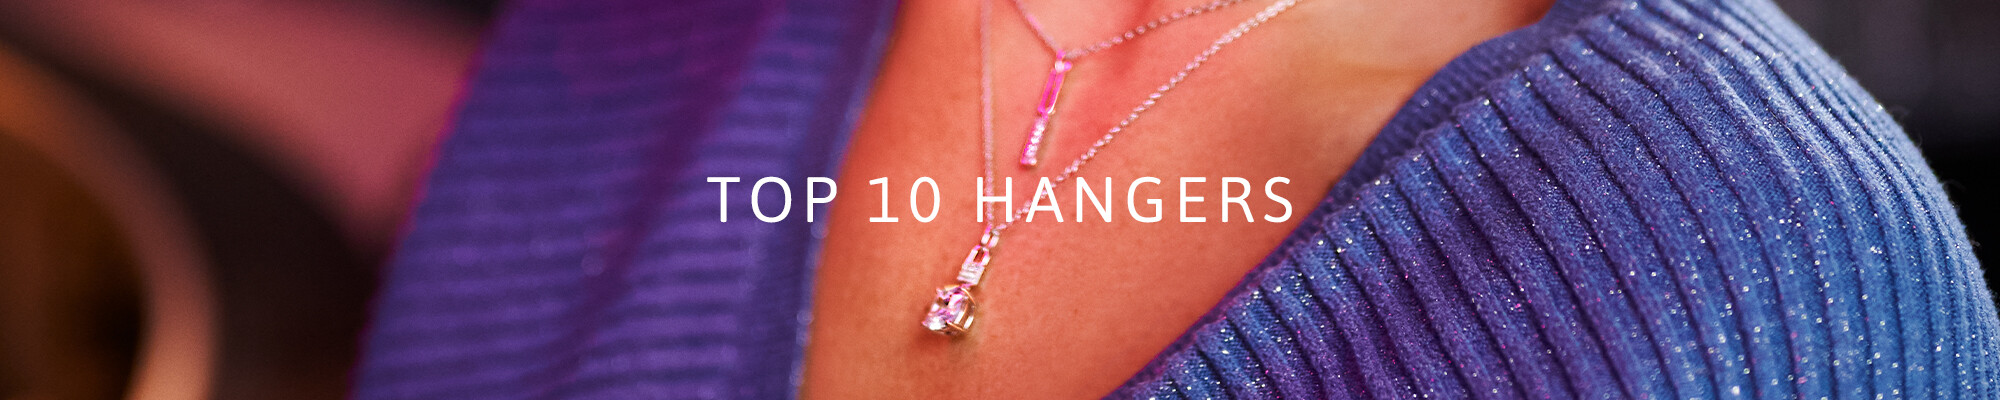 Top 10 Hangers